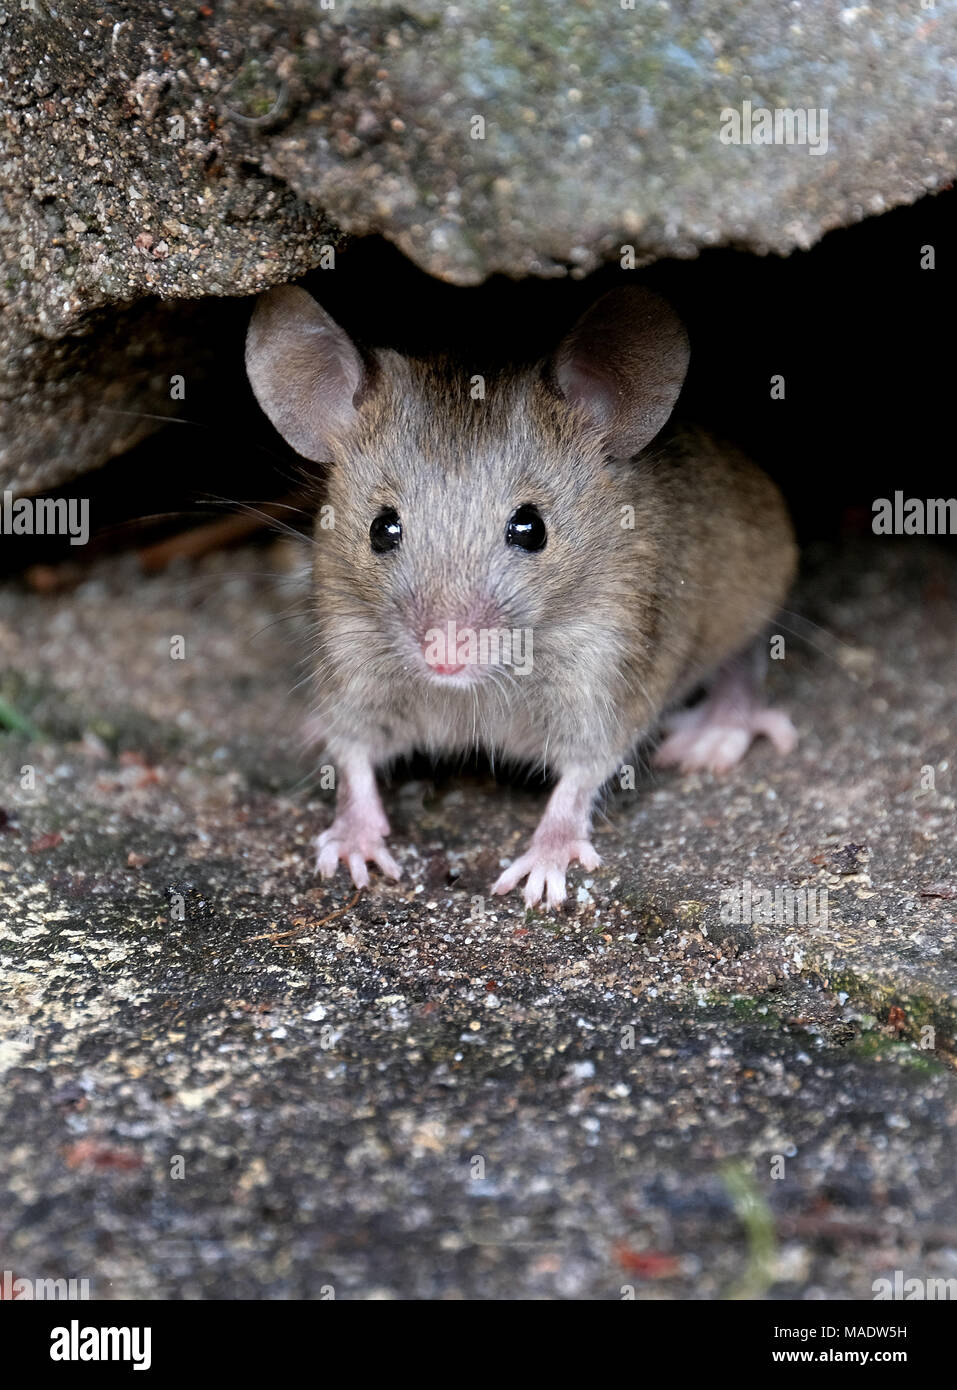 Mouse nasconde ma in cerca di cibo in casa Urban garden. Foto Stock